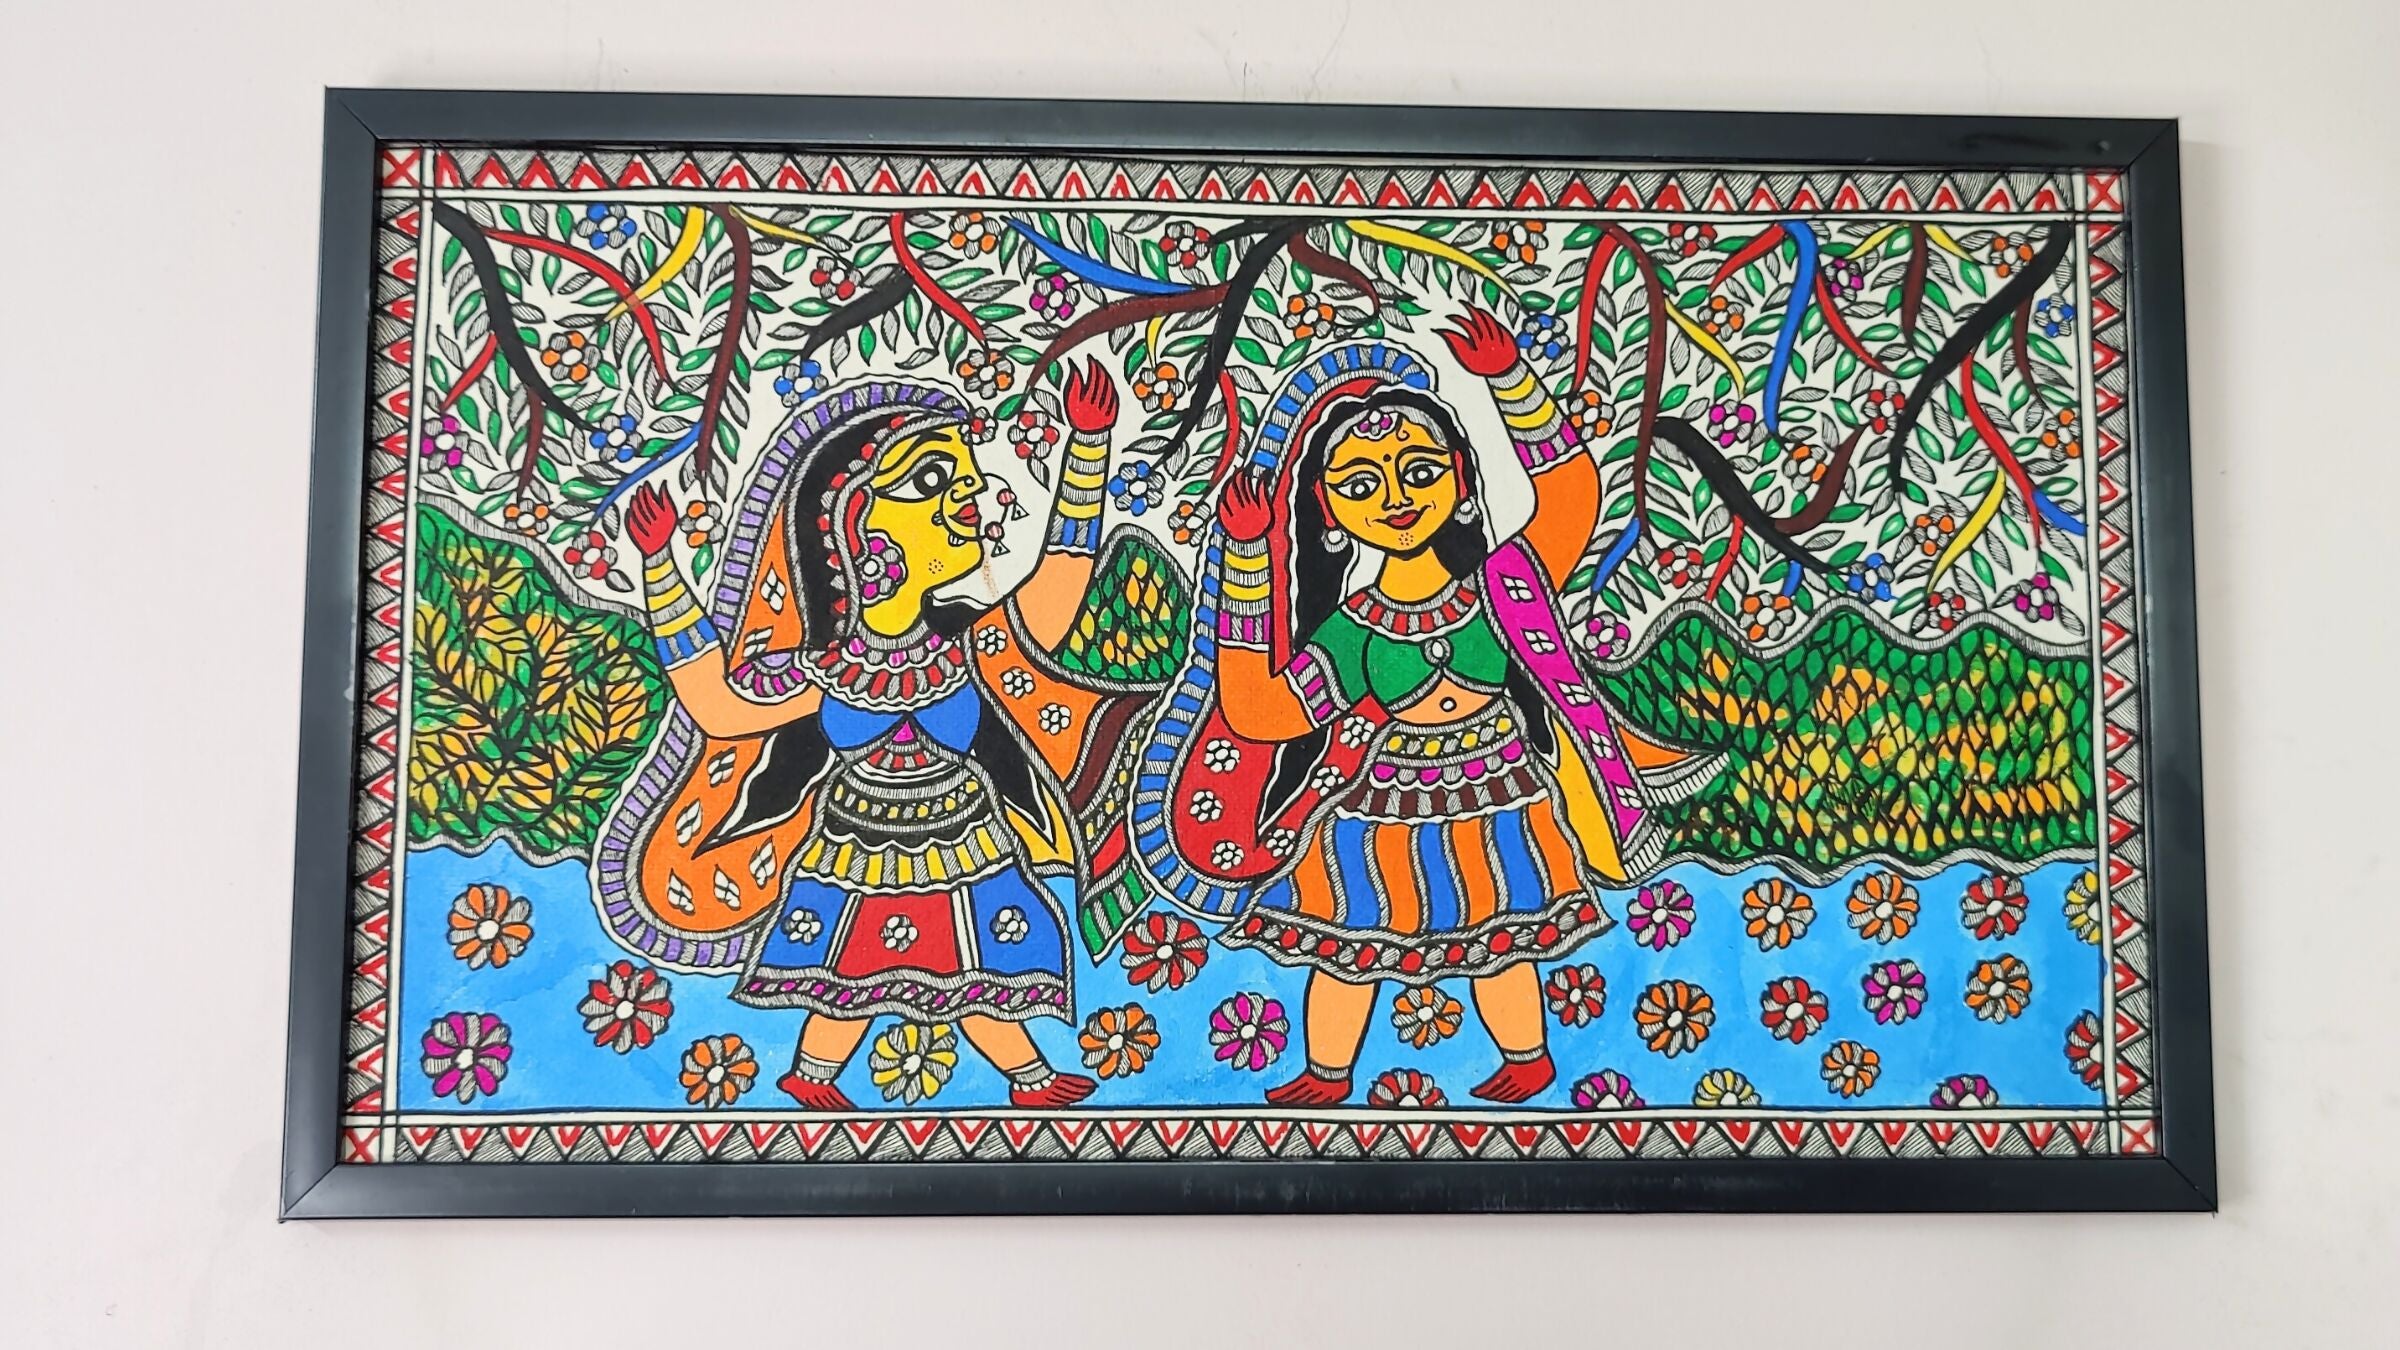 Floral Festivities: Madhubani Painting